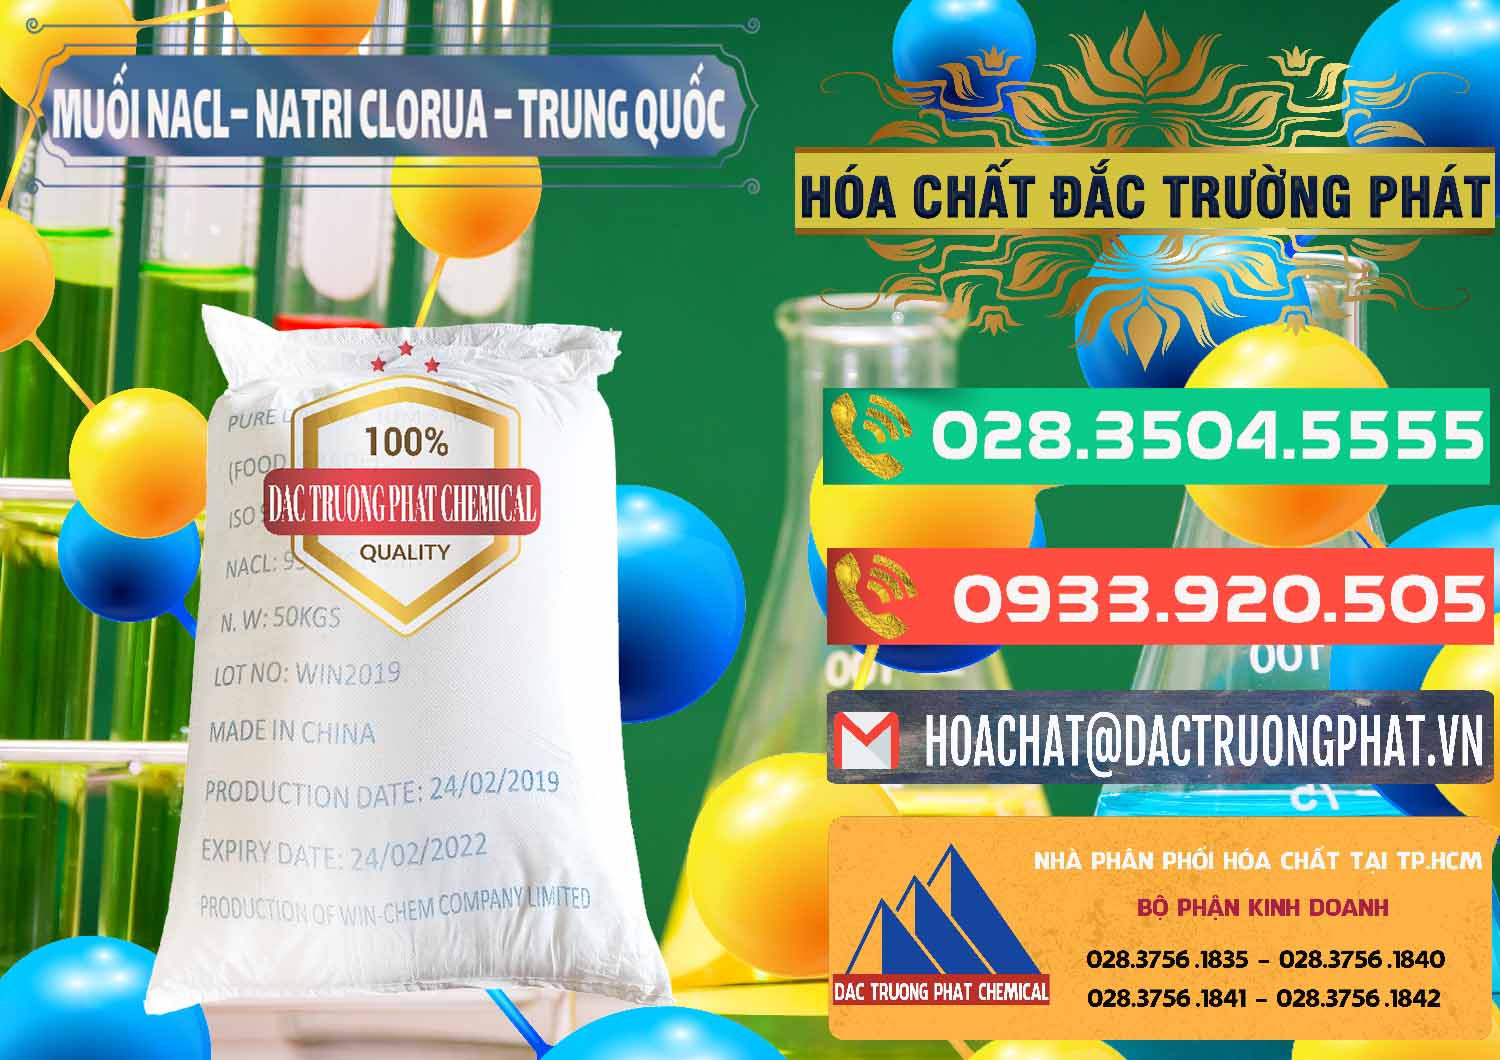 Cty bán ( cung ứng ) Muối NaCL – Sodium Chloride Trung Quốc China - 0097 - Nhà phân phối _ cung cấp hóa chất tại TP.HCM - congtyhoachat.com.vn